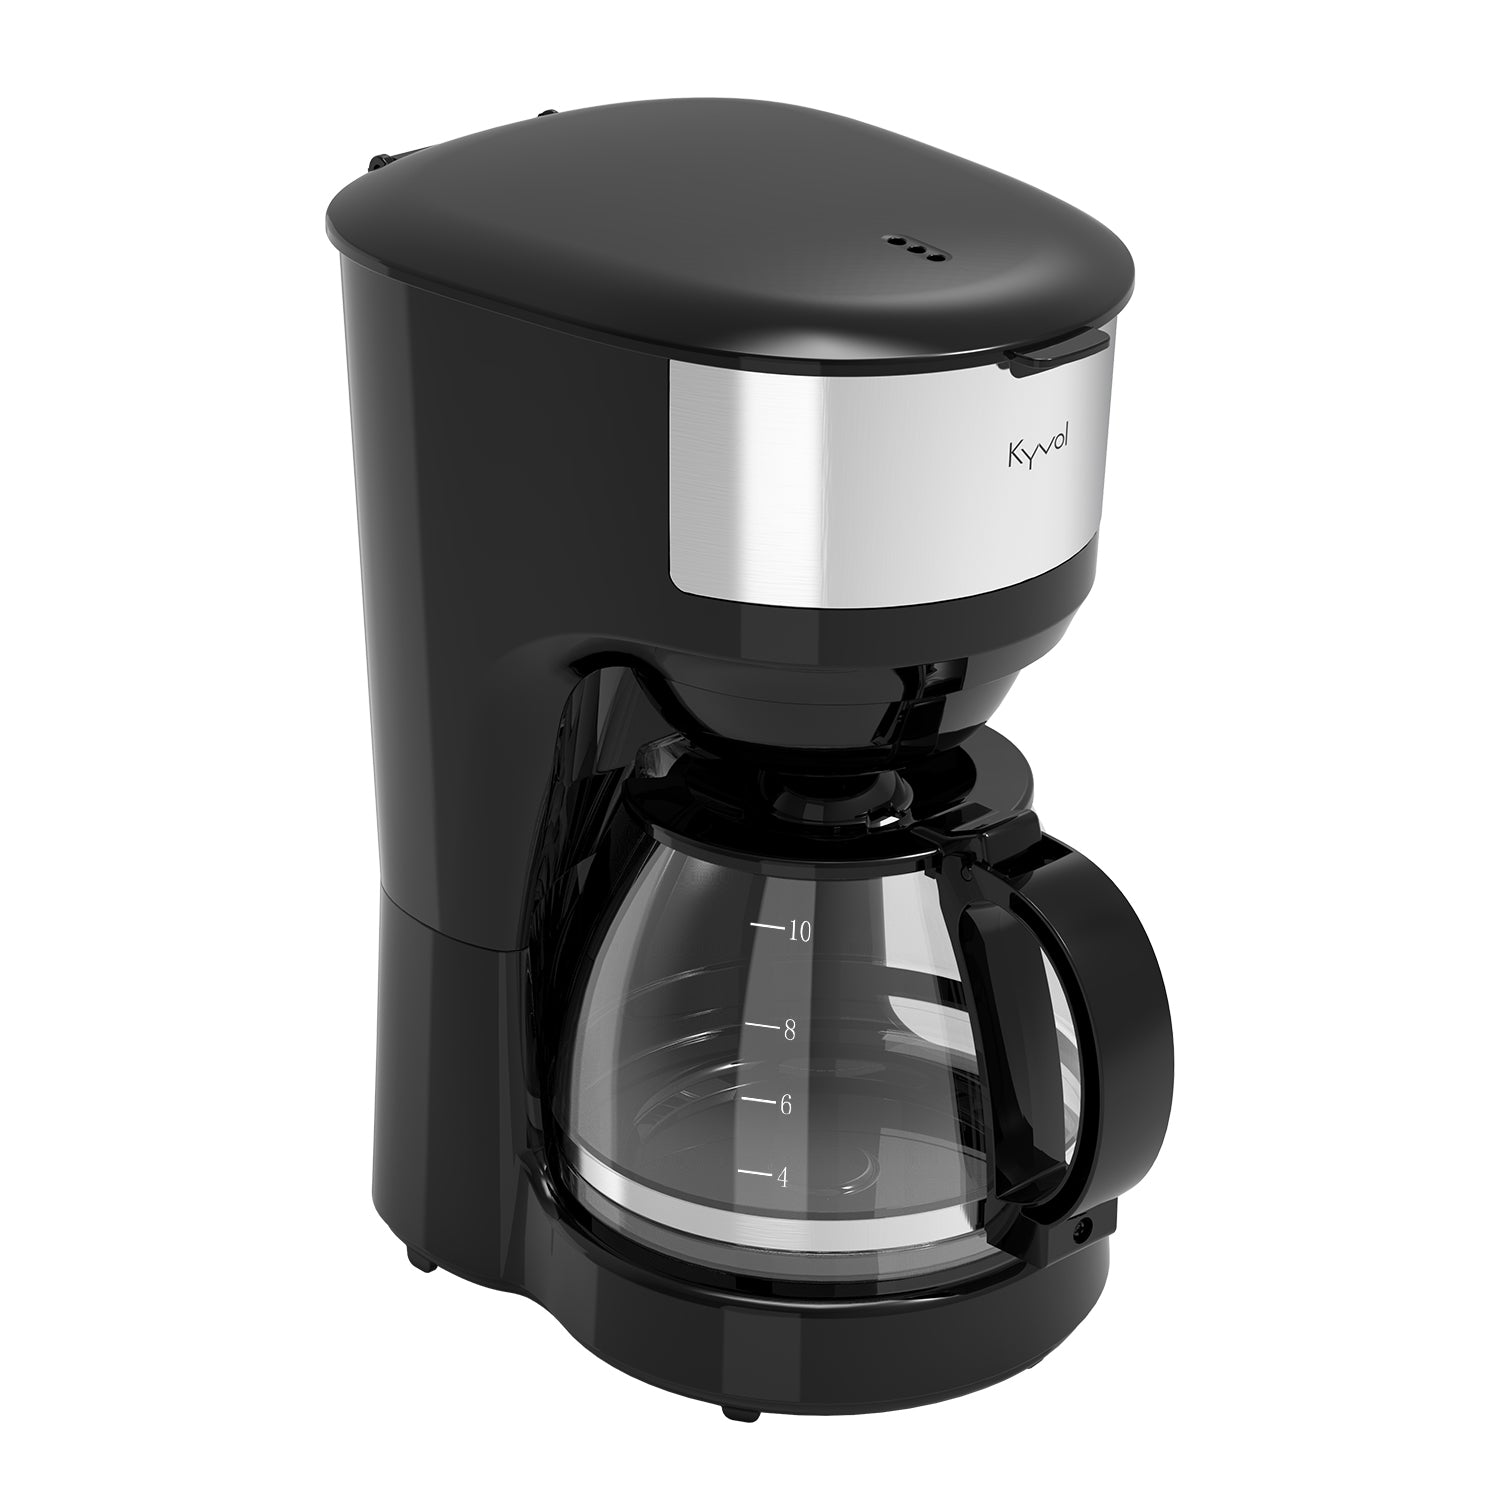 Кофеварка капельного типа Kyvol CM-DM102A черная кофеварка капельного типа kyvol cm dm100a черная